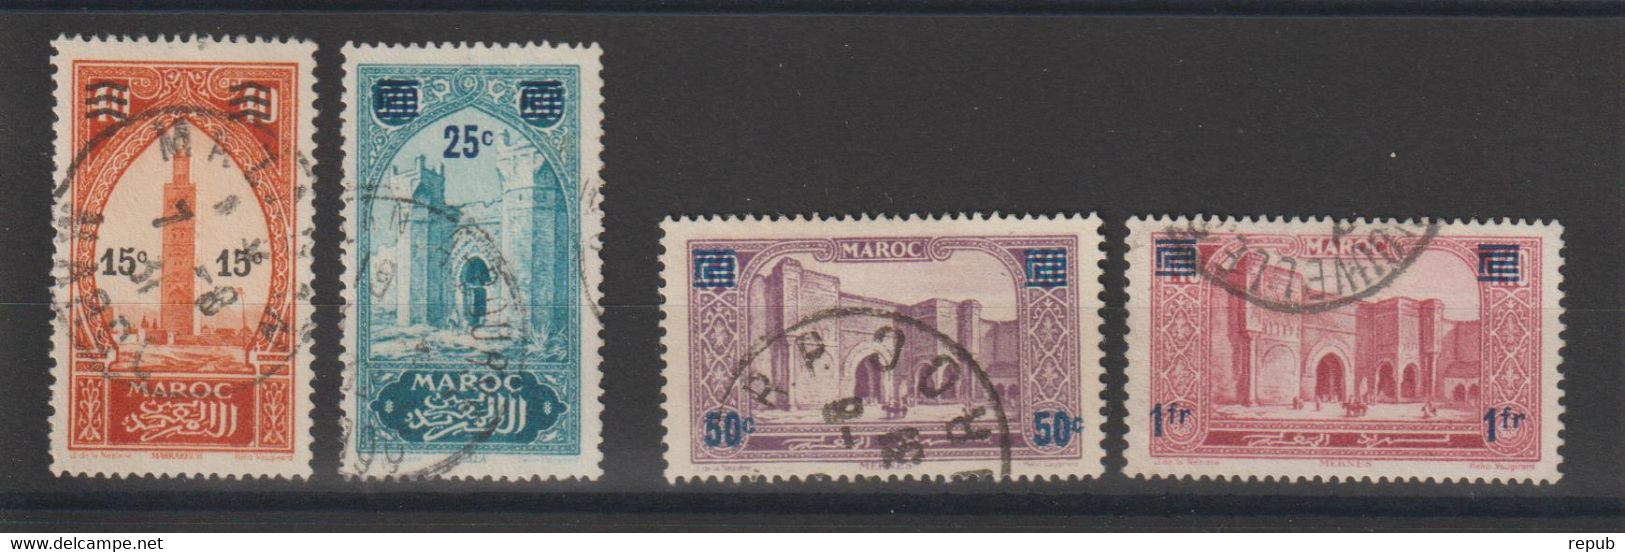 Maroc 1930-31 Série Sites Surchargée 124-127 4 Val Oblit. Used - Usados